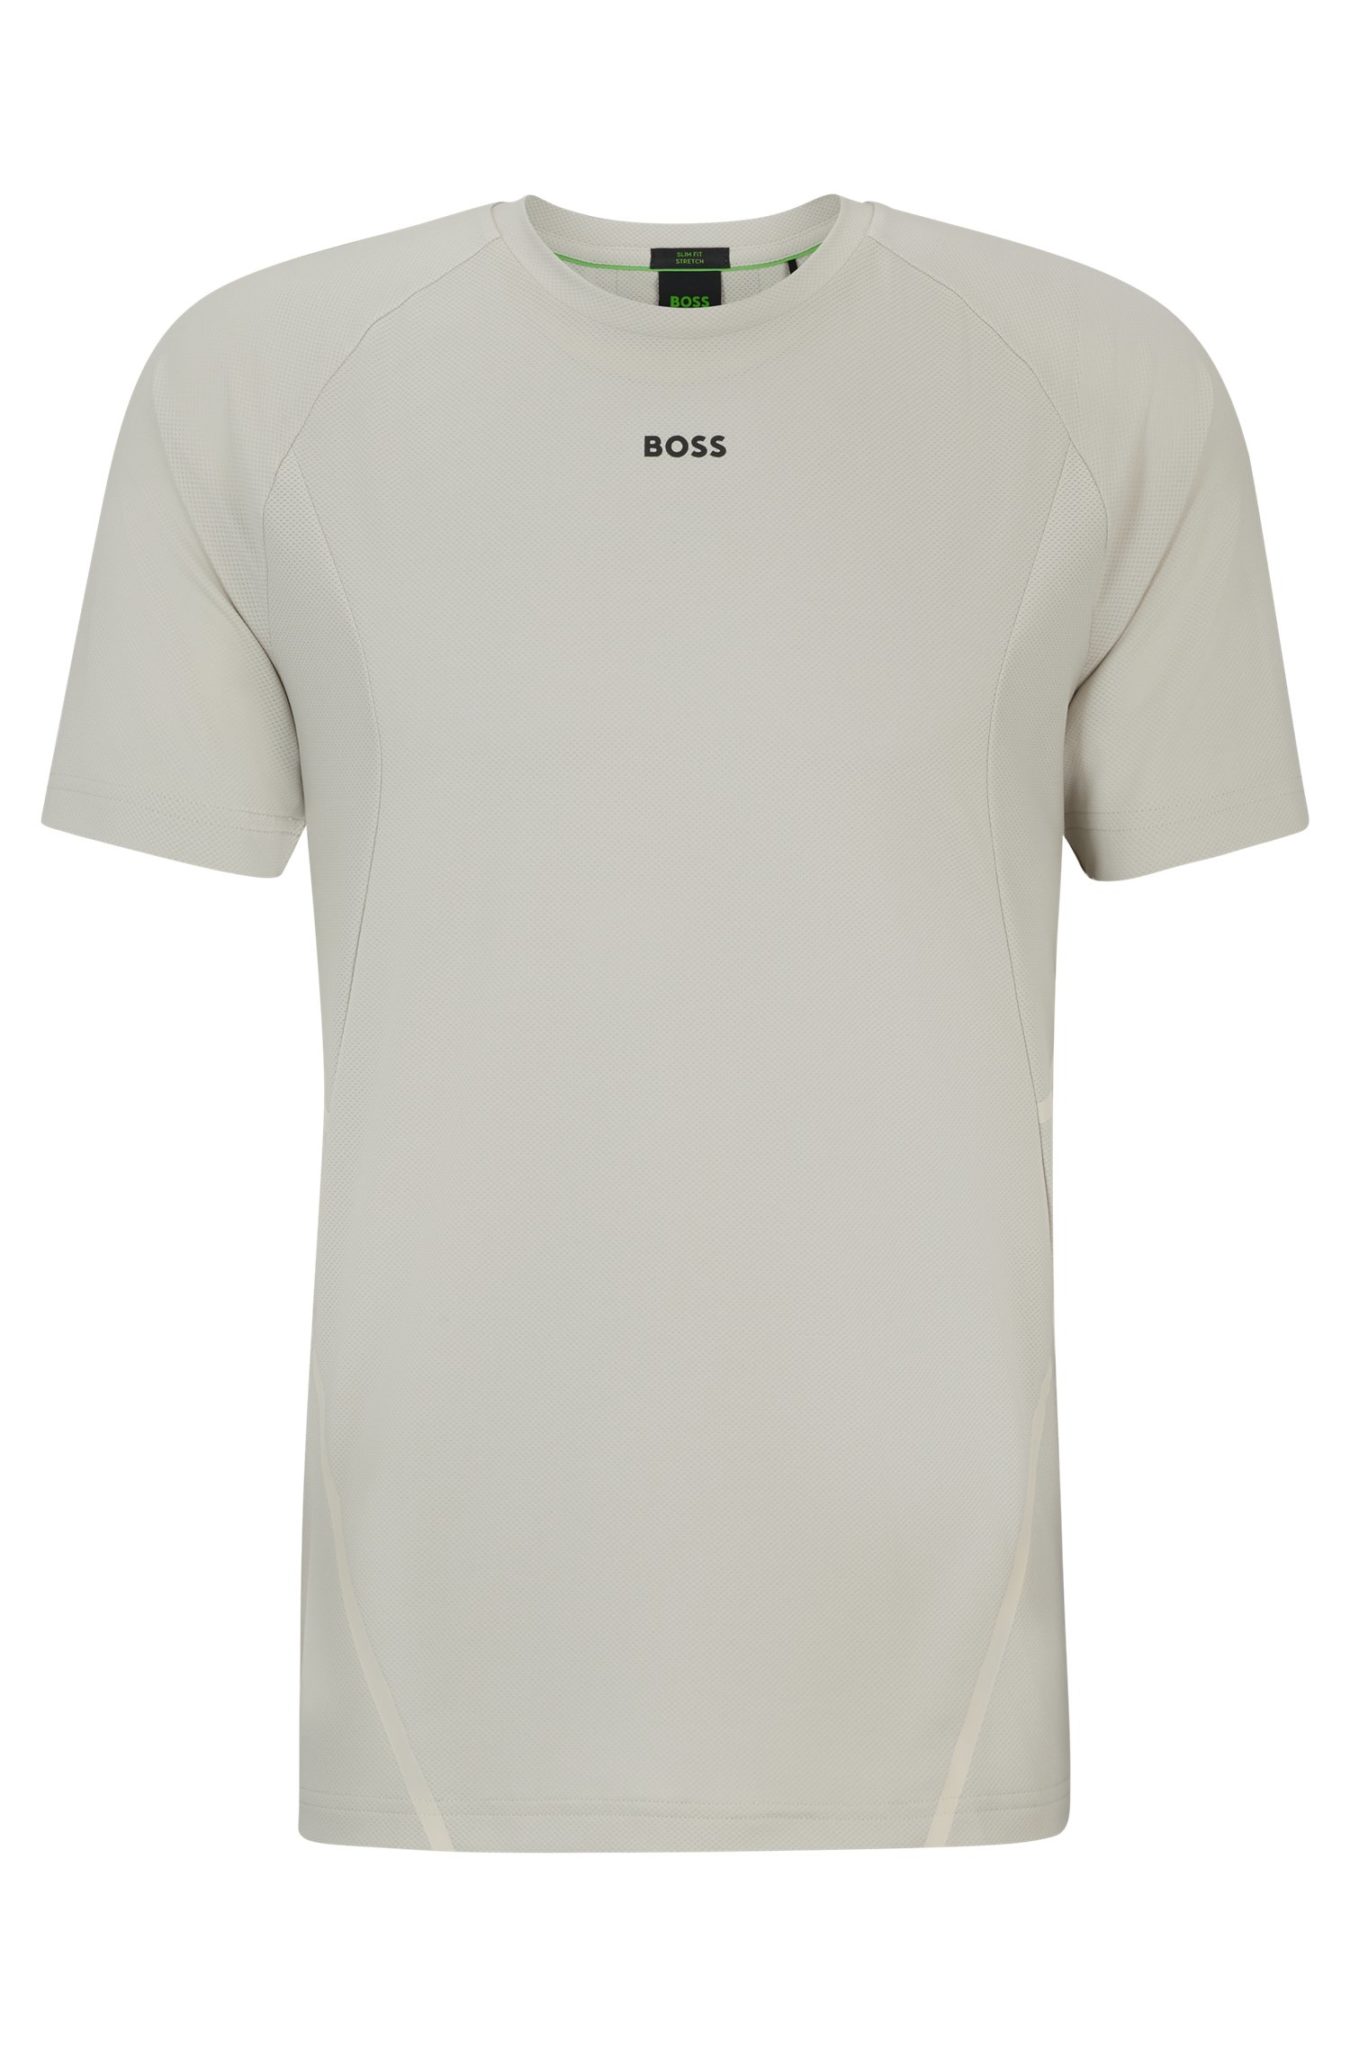 Hugo Boss T-shirt Slim Fit en tissu stretch avec motif réfléchissant décoratif